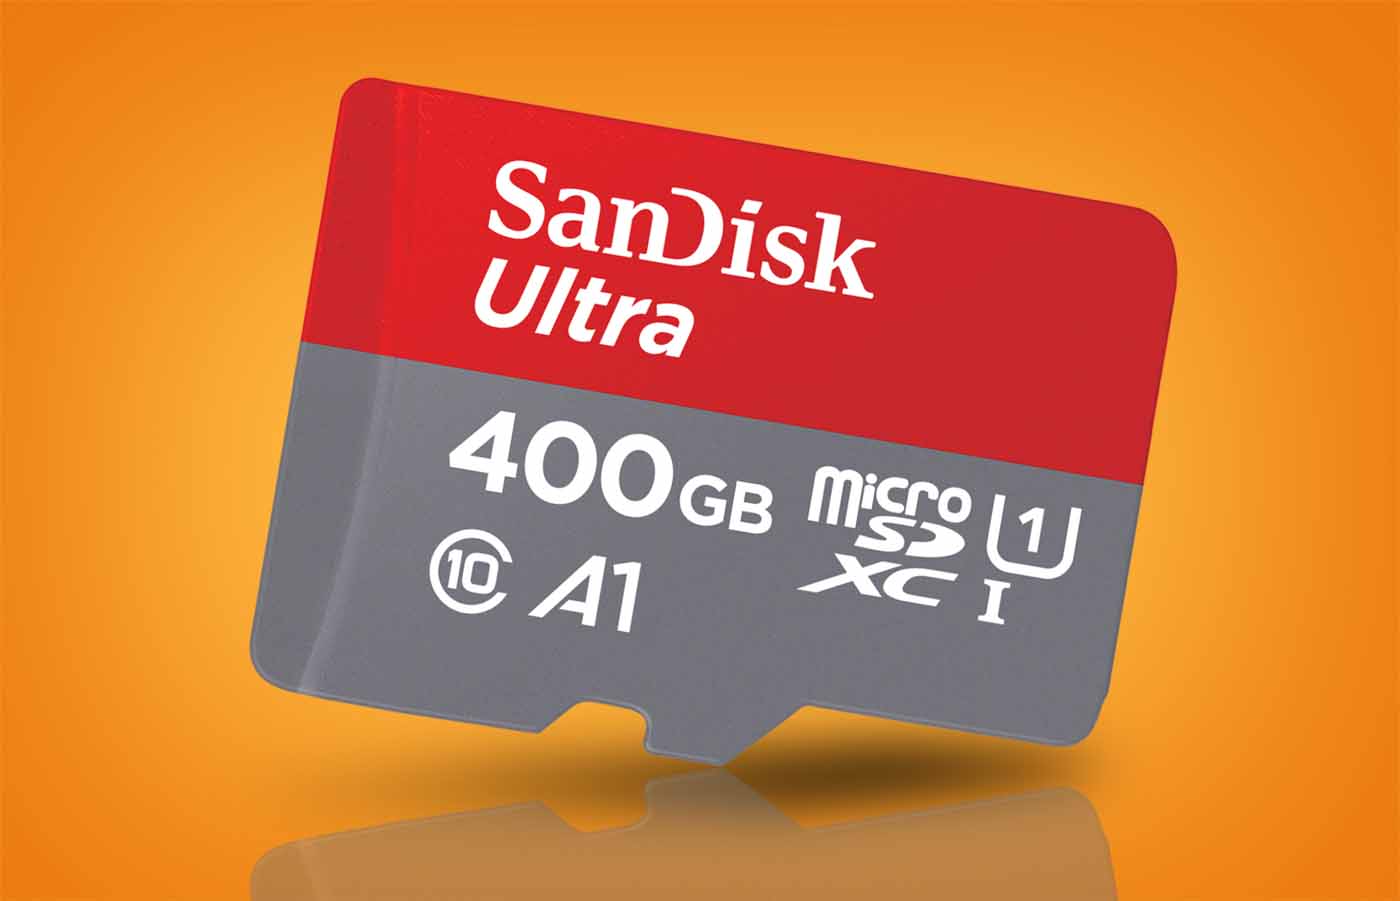 La nueva tarjeta SanDisk Ultra UHS-I alcanza una capacidad de 400 GB, más que muchos portátiles